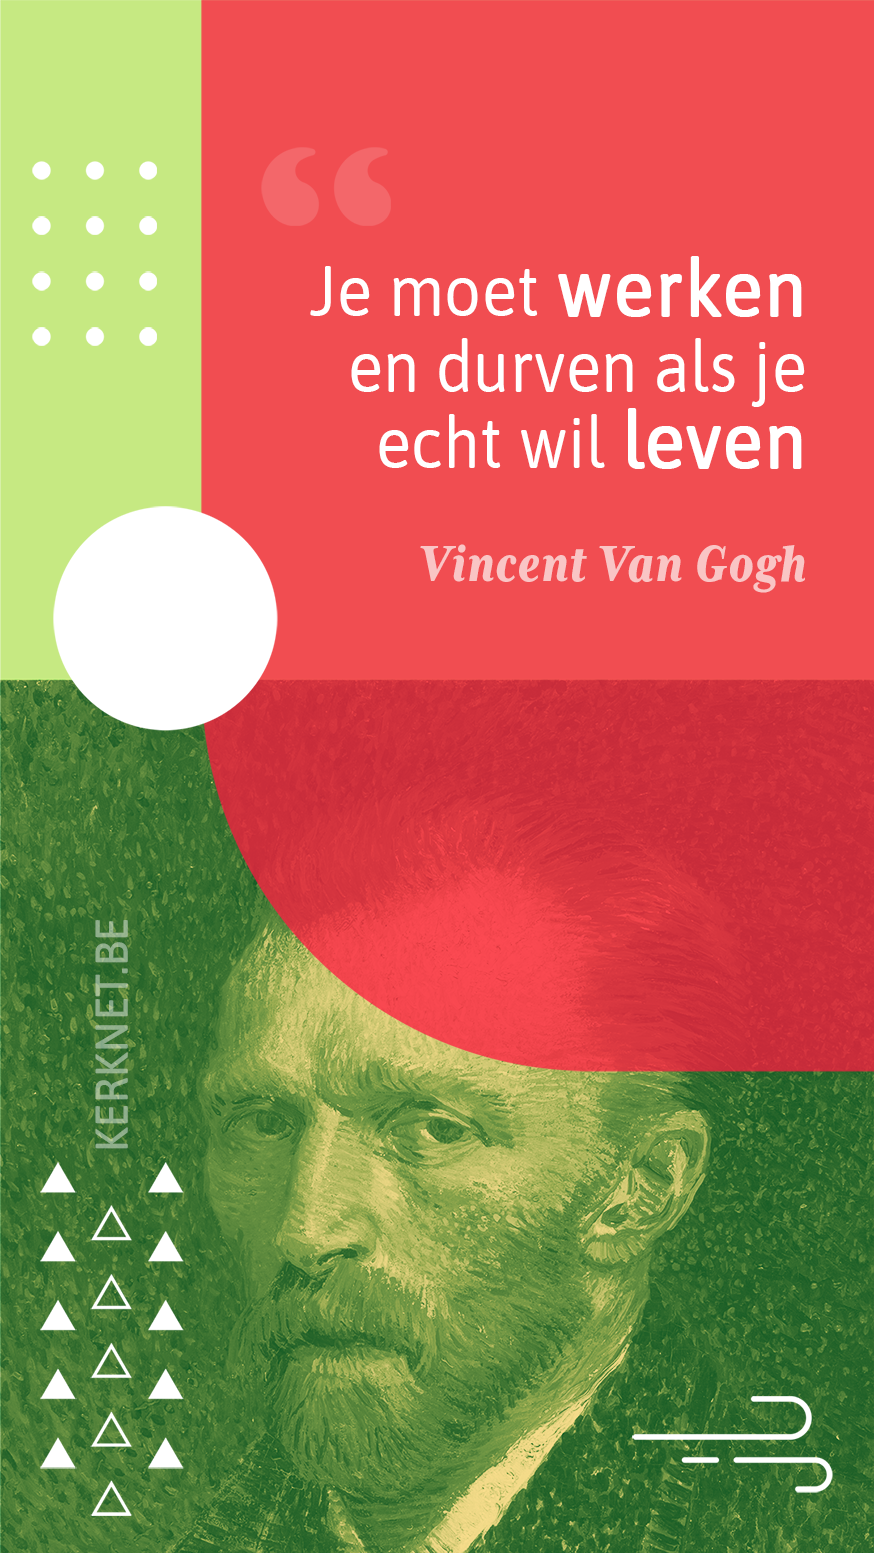 Je moet werken en durven als je echt wil leven – Vincent Van Gogh